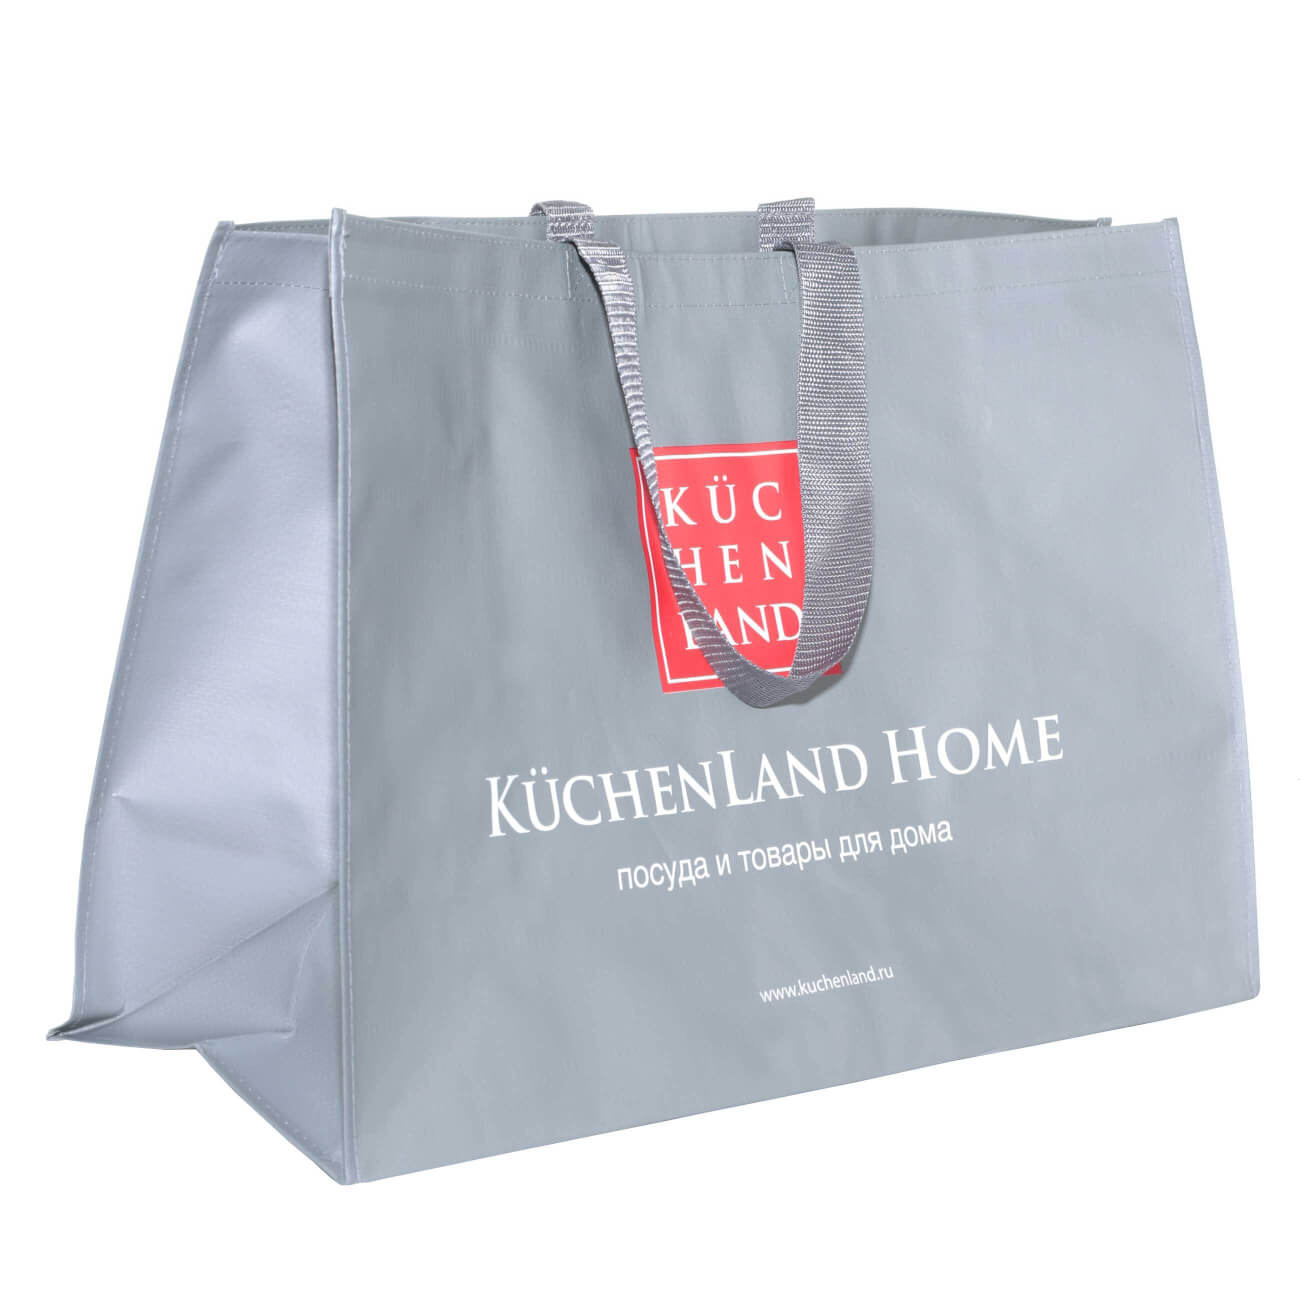 Сумка-шоппер, 60х40 см, серая, Kuchenland, Basic сумка переноска слинг с креплением для ошейника 45 х 11 х 24 см бело серая